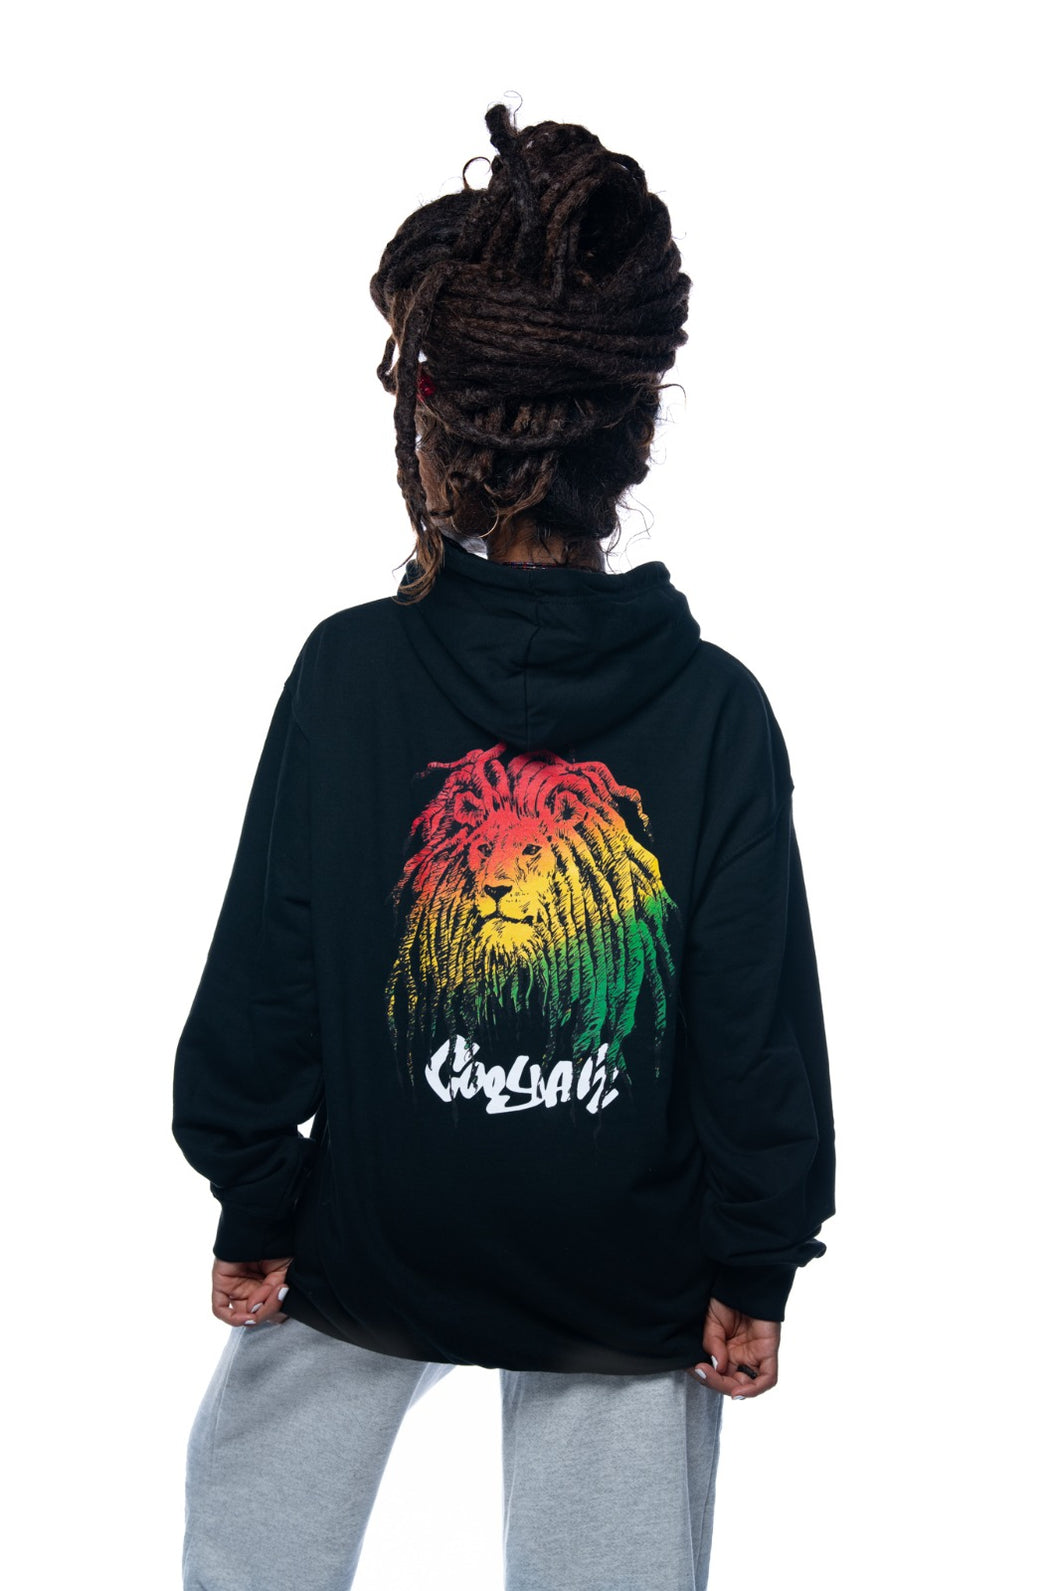 Cooyah Jamaica.  Rasta Lion hoodie in black.  Screen printed in reggae colors.  Jamaican clothing brand.